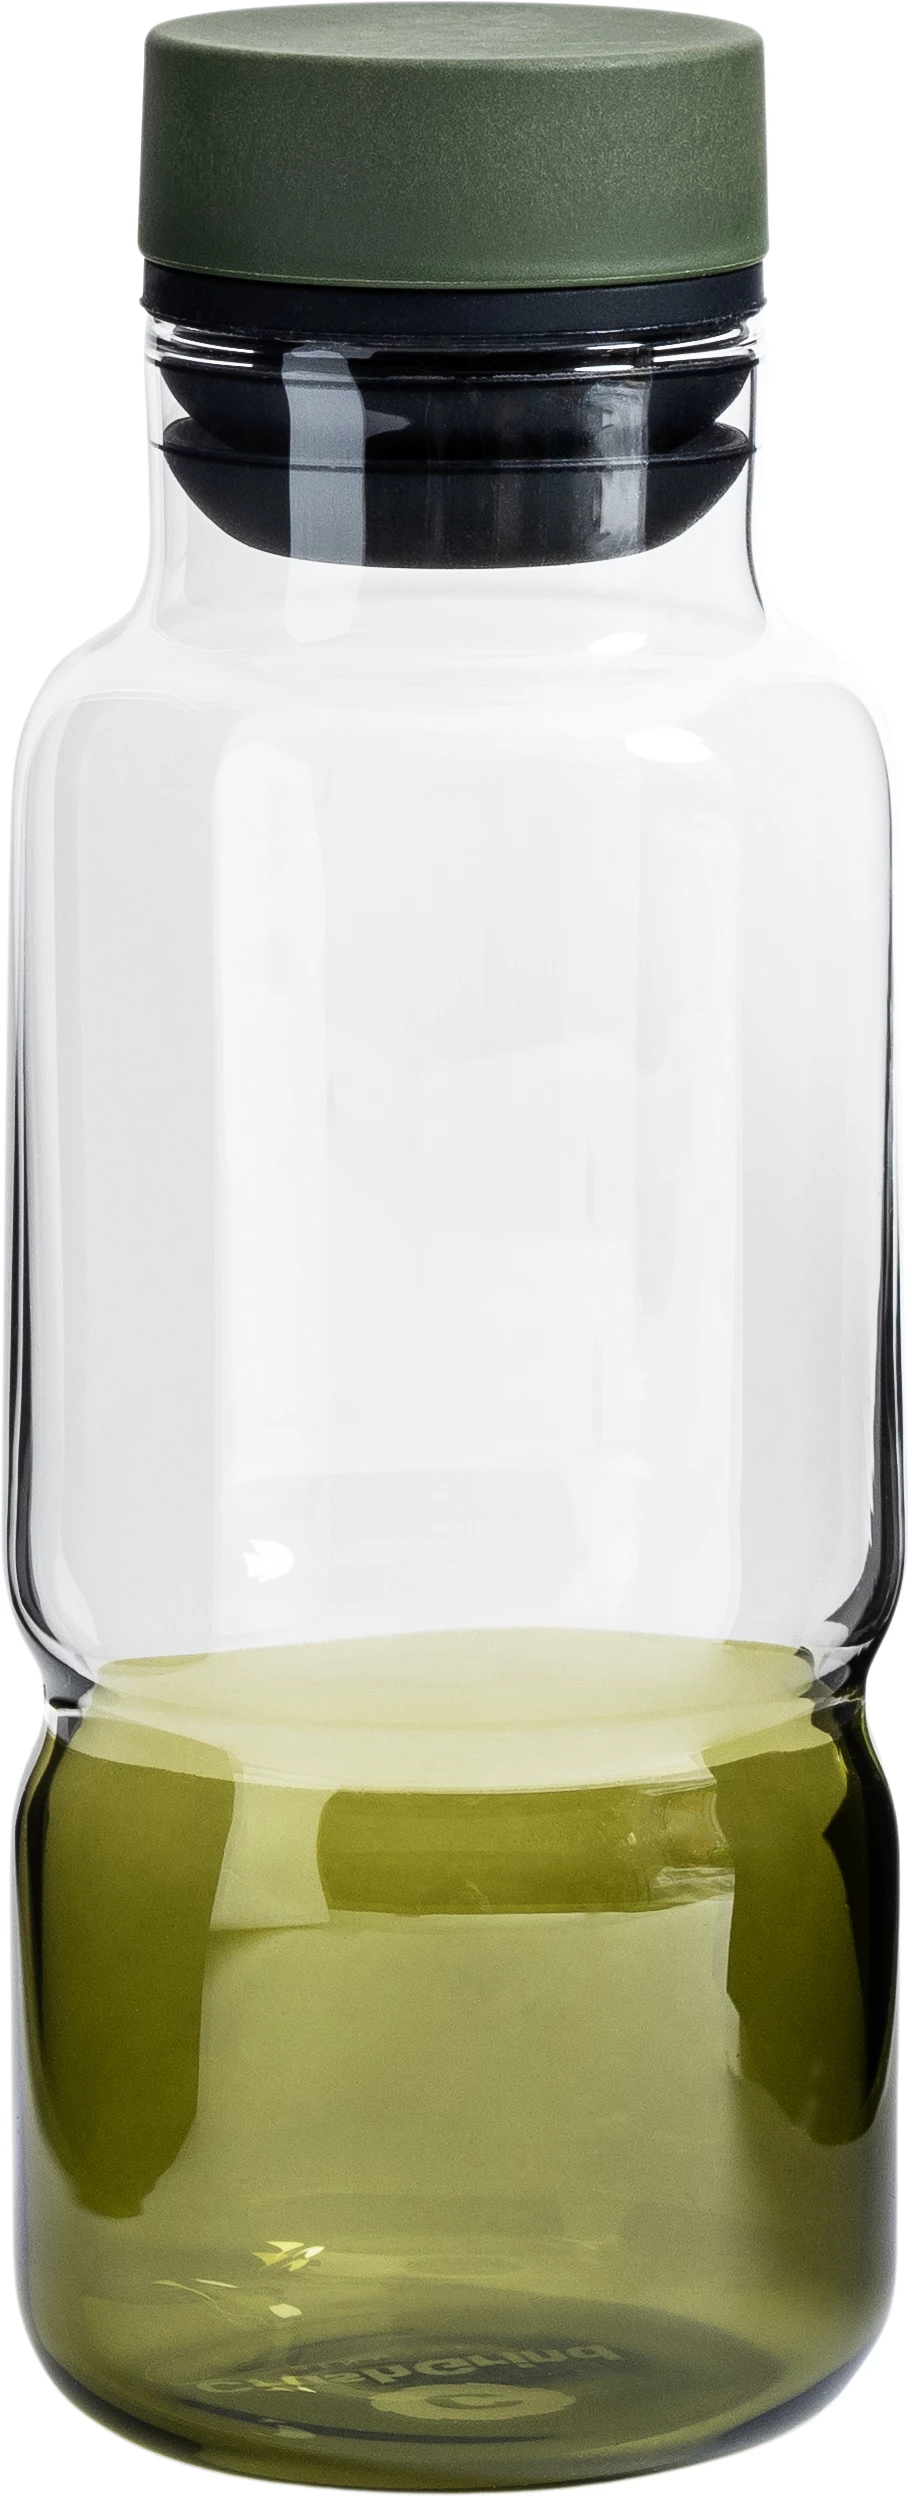 CrushGrind Billund olie-/eddikeflaske, grøn, 0,26 ltr.